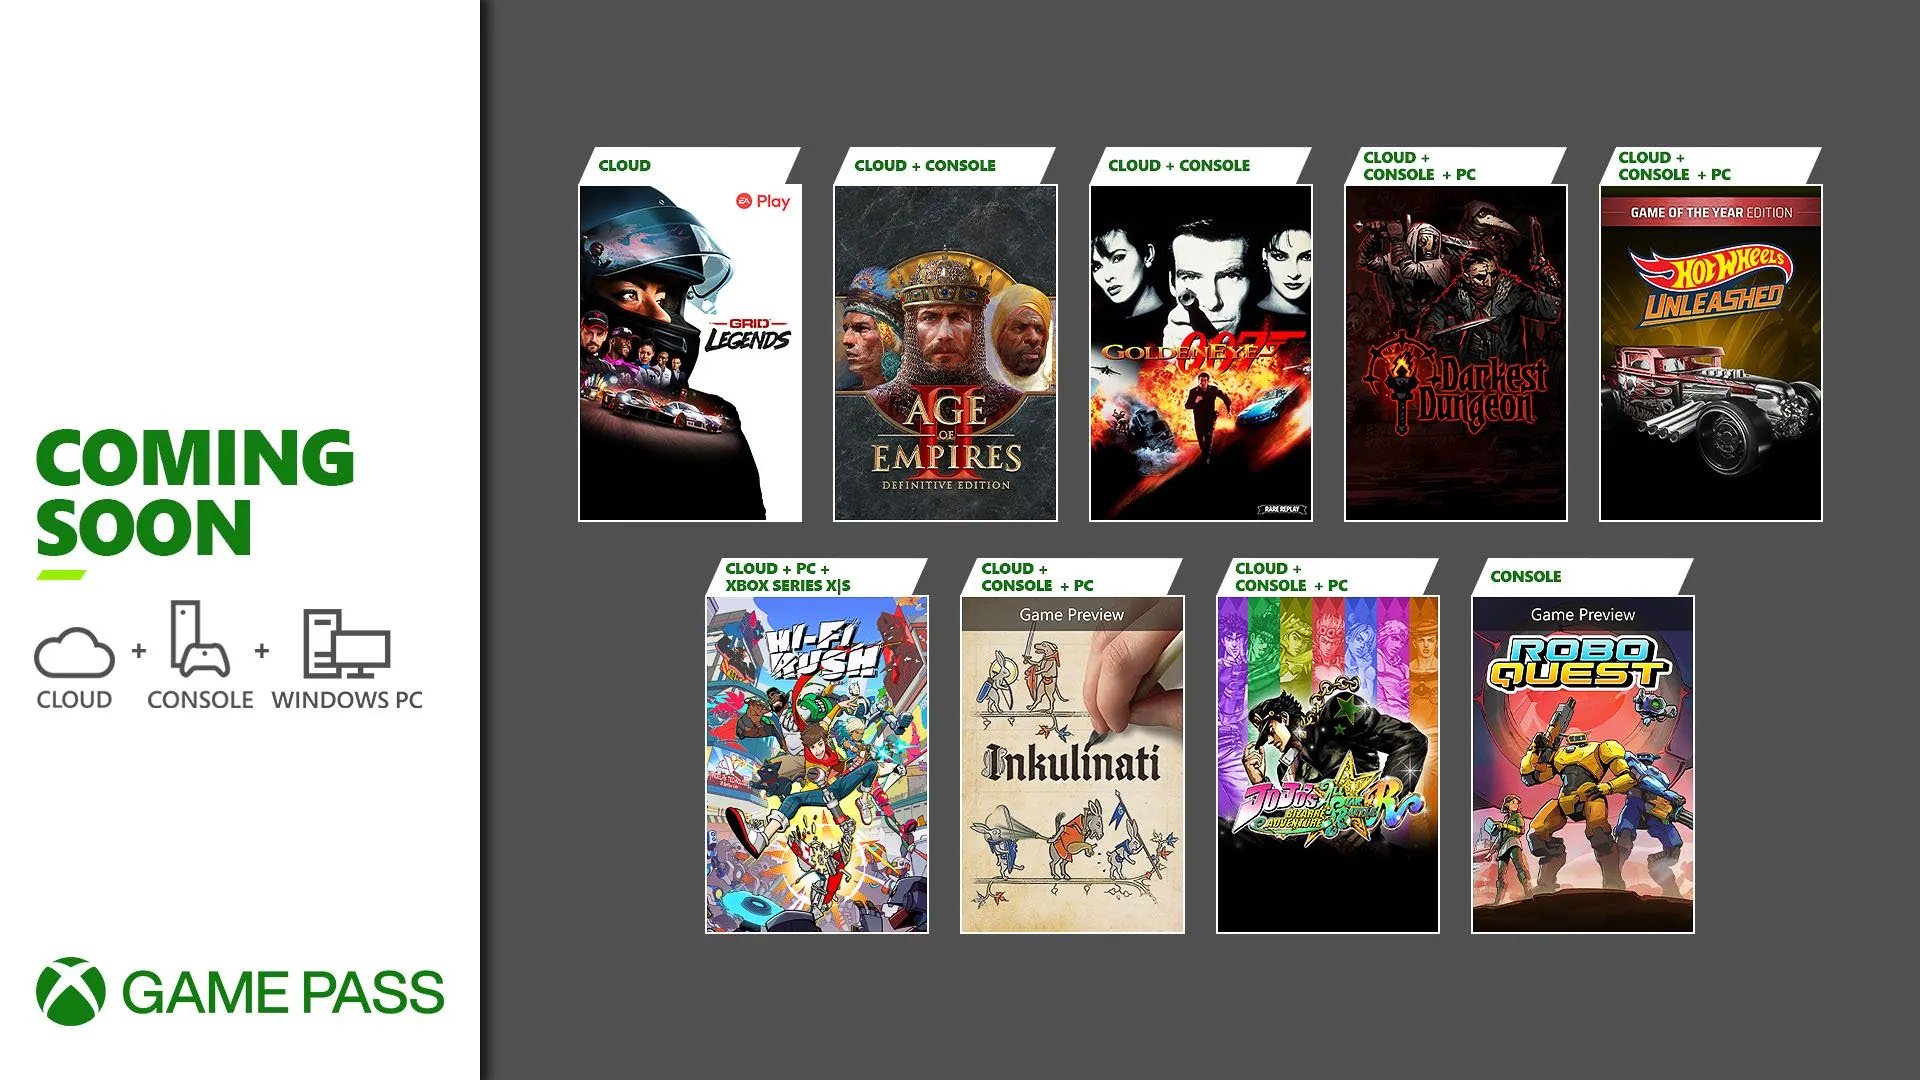 Xbox Game Pass adds Hi-Fi RUSH, GoldenEye 007, JoJo's Bizarre